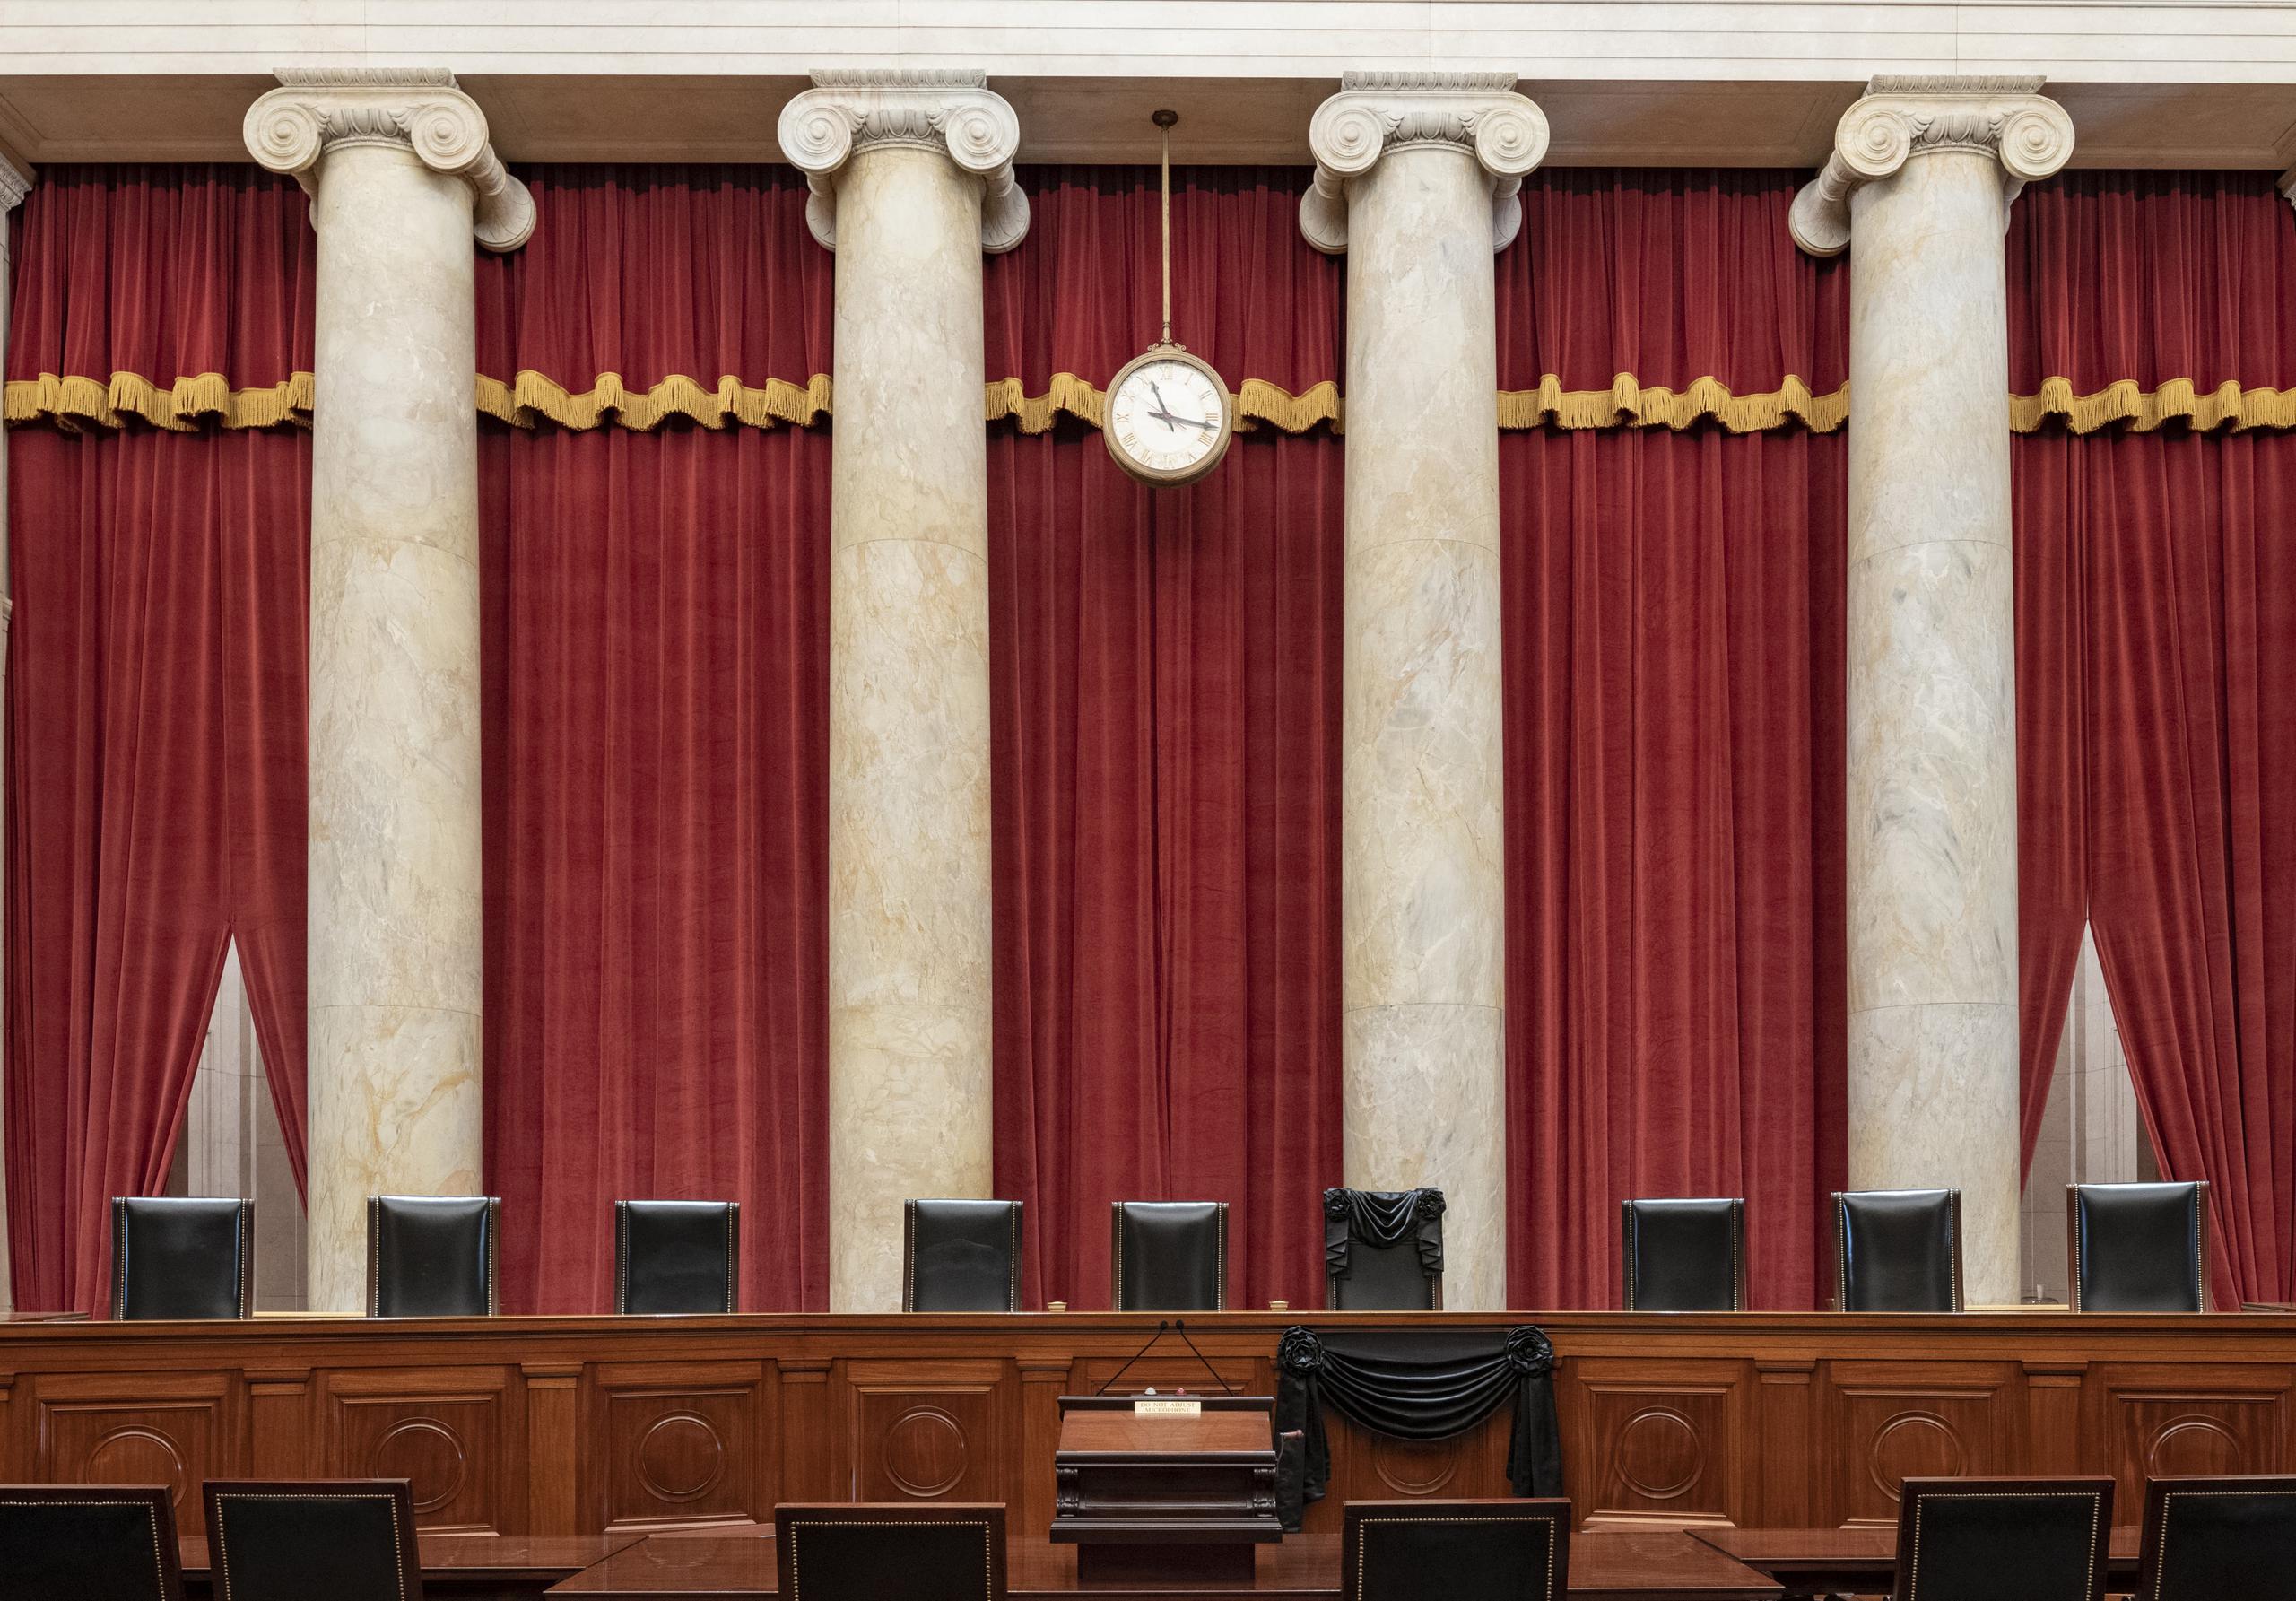 Corte Suprema de Estados Unidos en Washington, donde se ve el banquillo de la fallecida jueza Ruth Bader Ginsburg cubierto con una túnica negra.